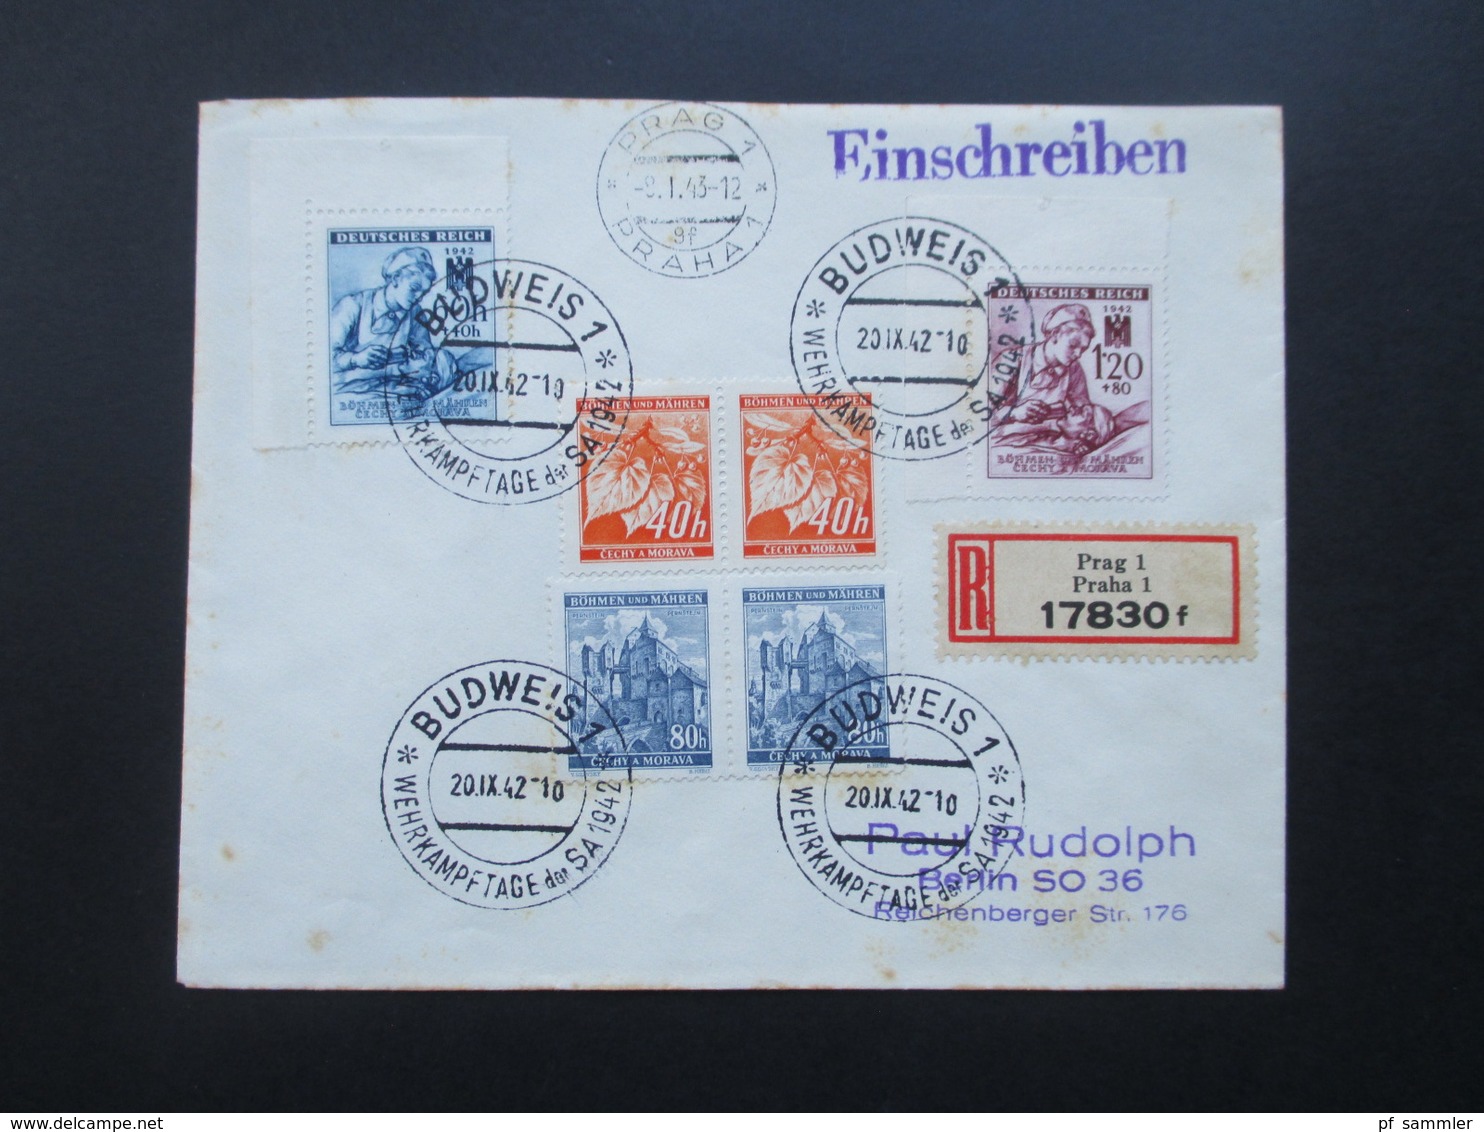 Böhmen Und Mähren 1942 / 43 SST / Sonderbeleg Ca. 3 Monate Später Echt Gelaufen Prag - Berlin! R-Brief Prag 1 17830 F - Covers & Documents